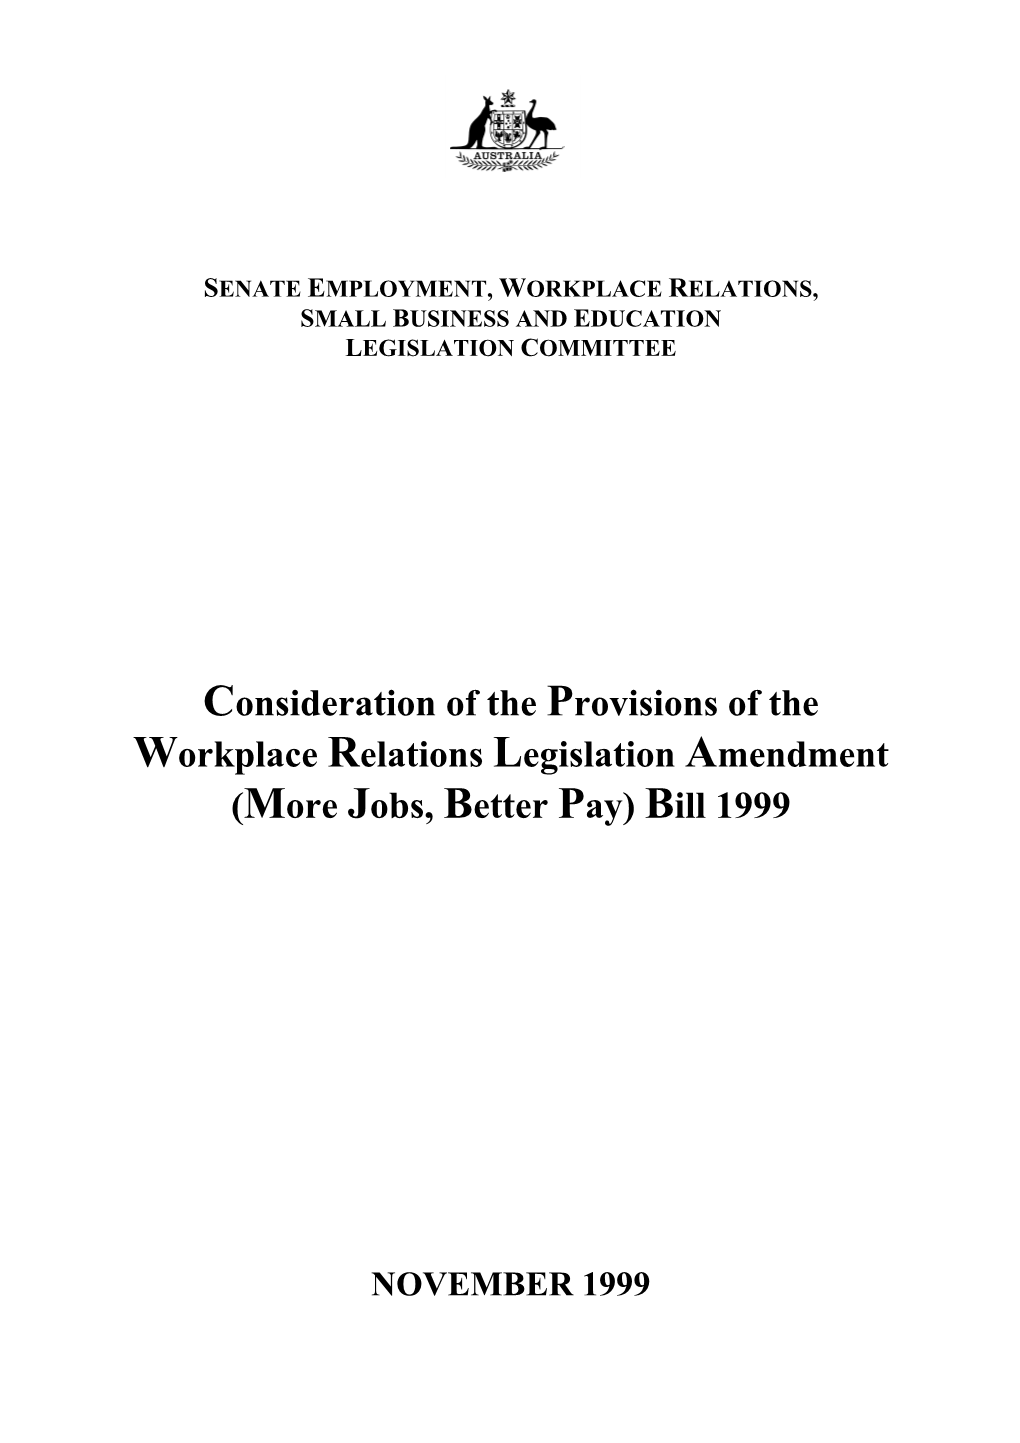 (More Jobs, Better Pay) Bill 1999